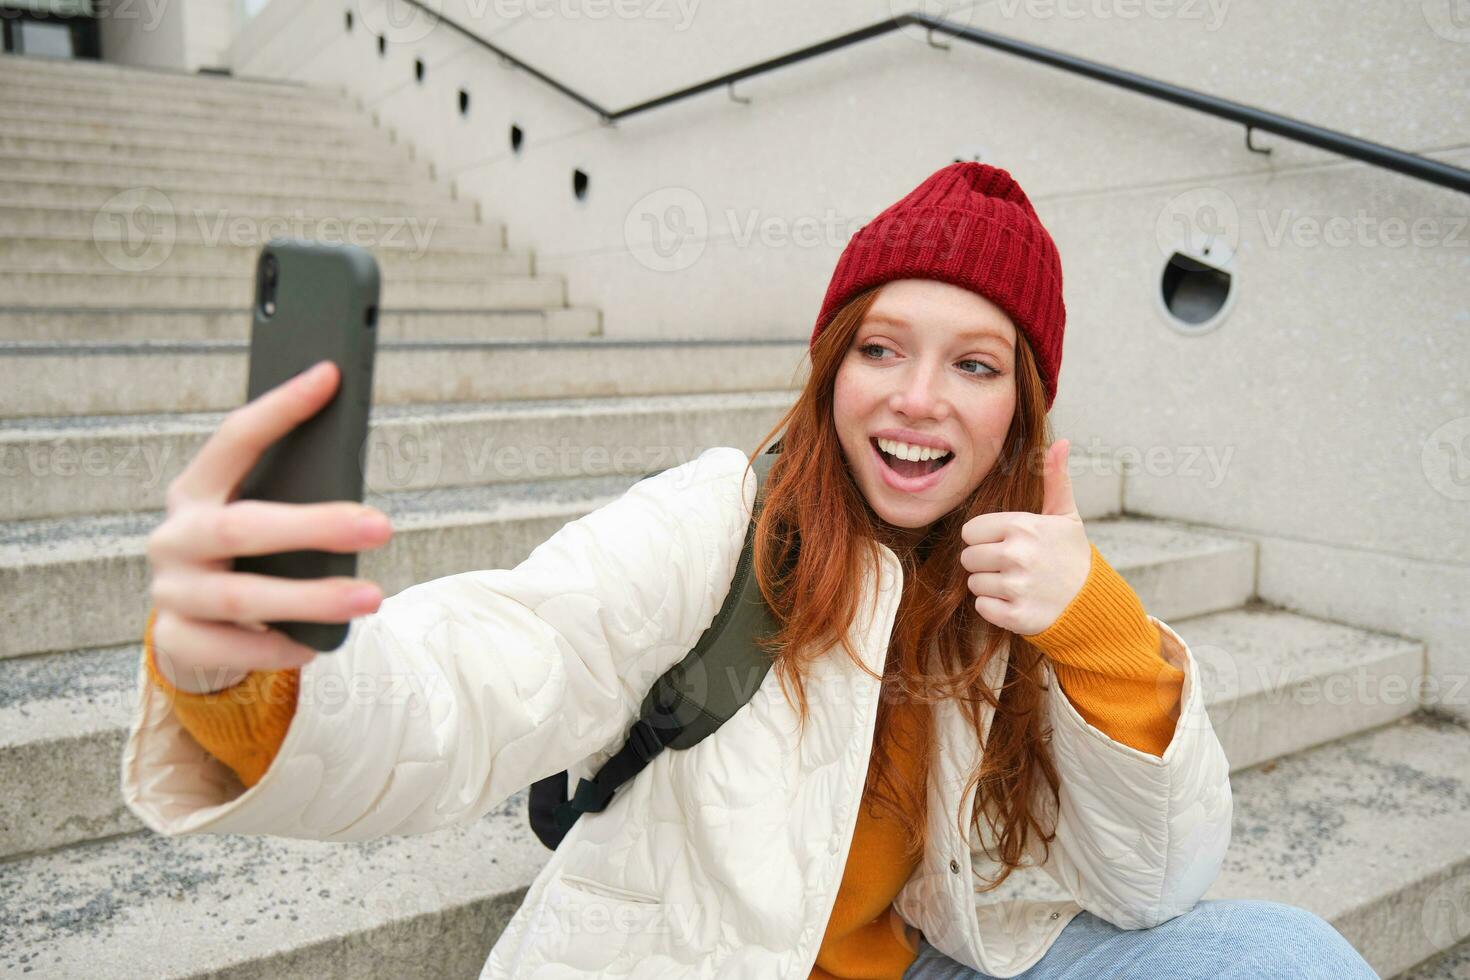 urbano menina leva selfie em rua escadaria, usa Smartphone aplicativo para levar foto do ela mesma, poses para social meios de comunicação inscrição